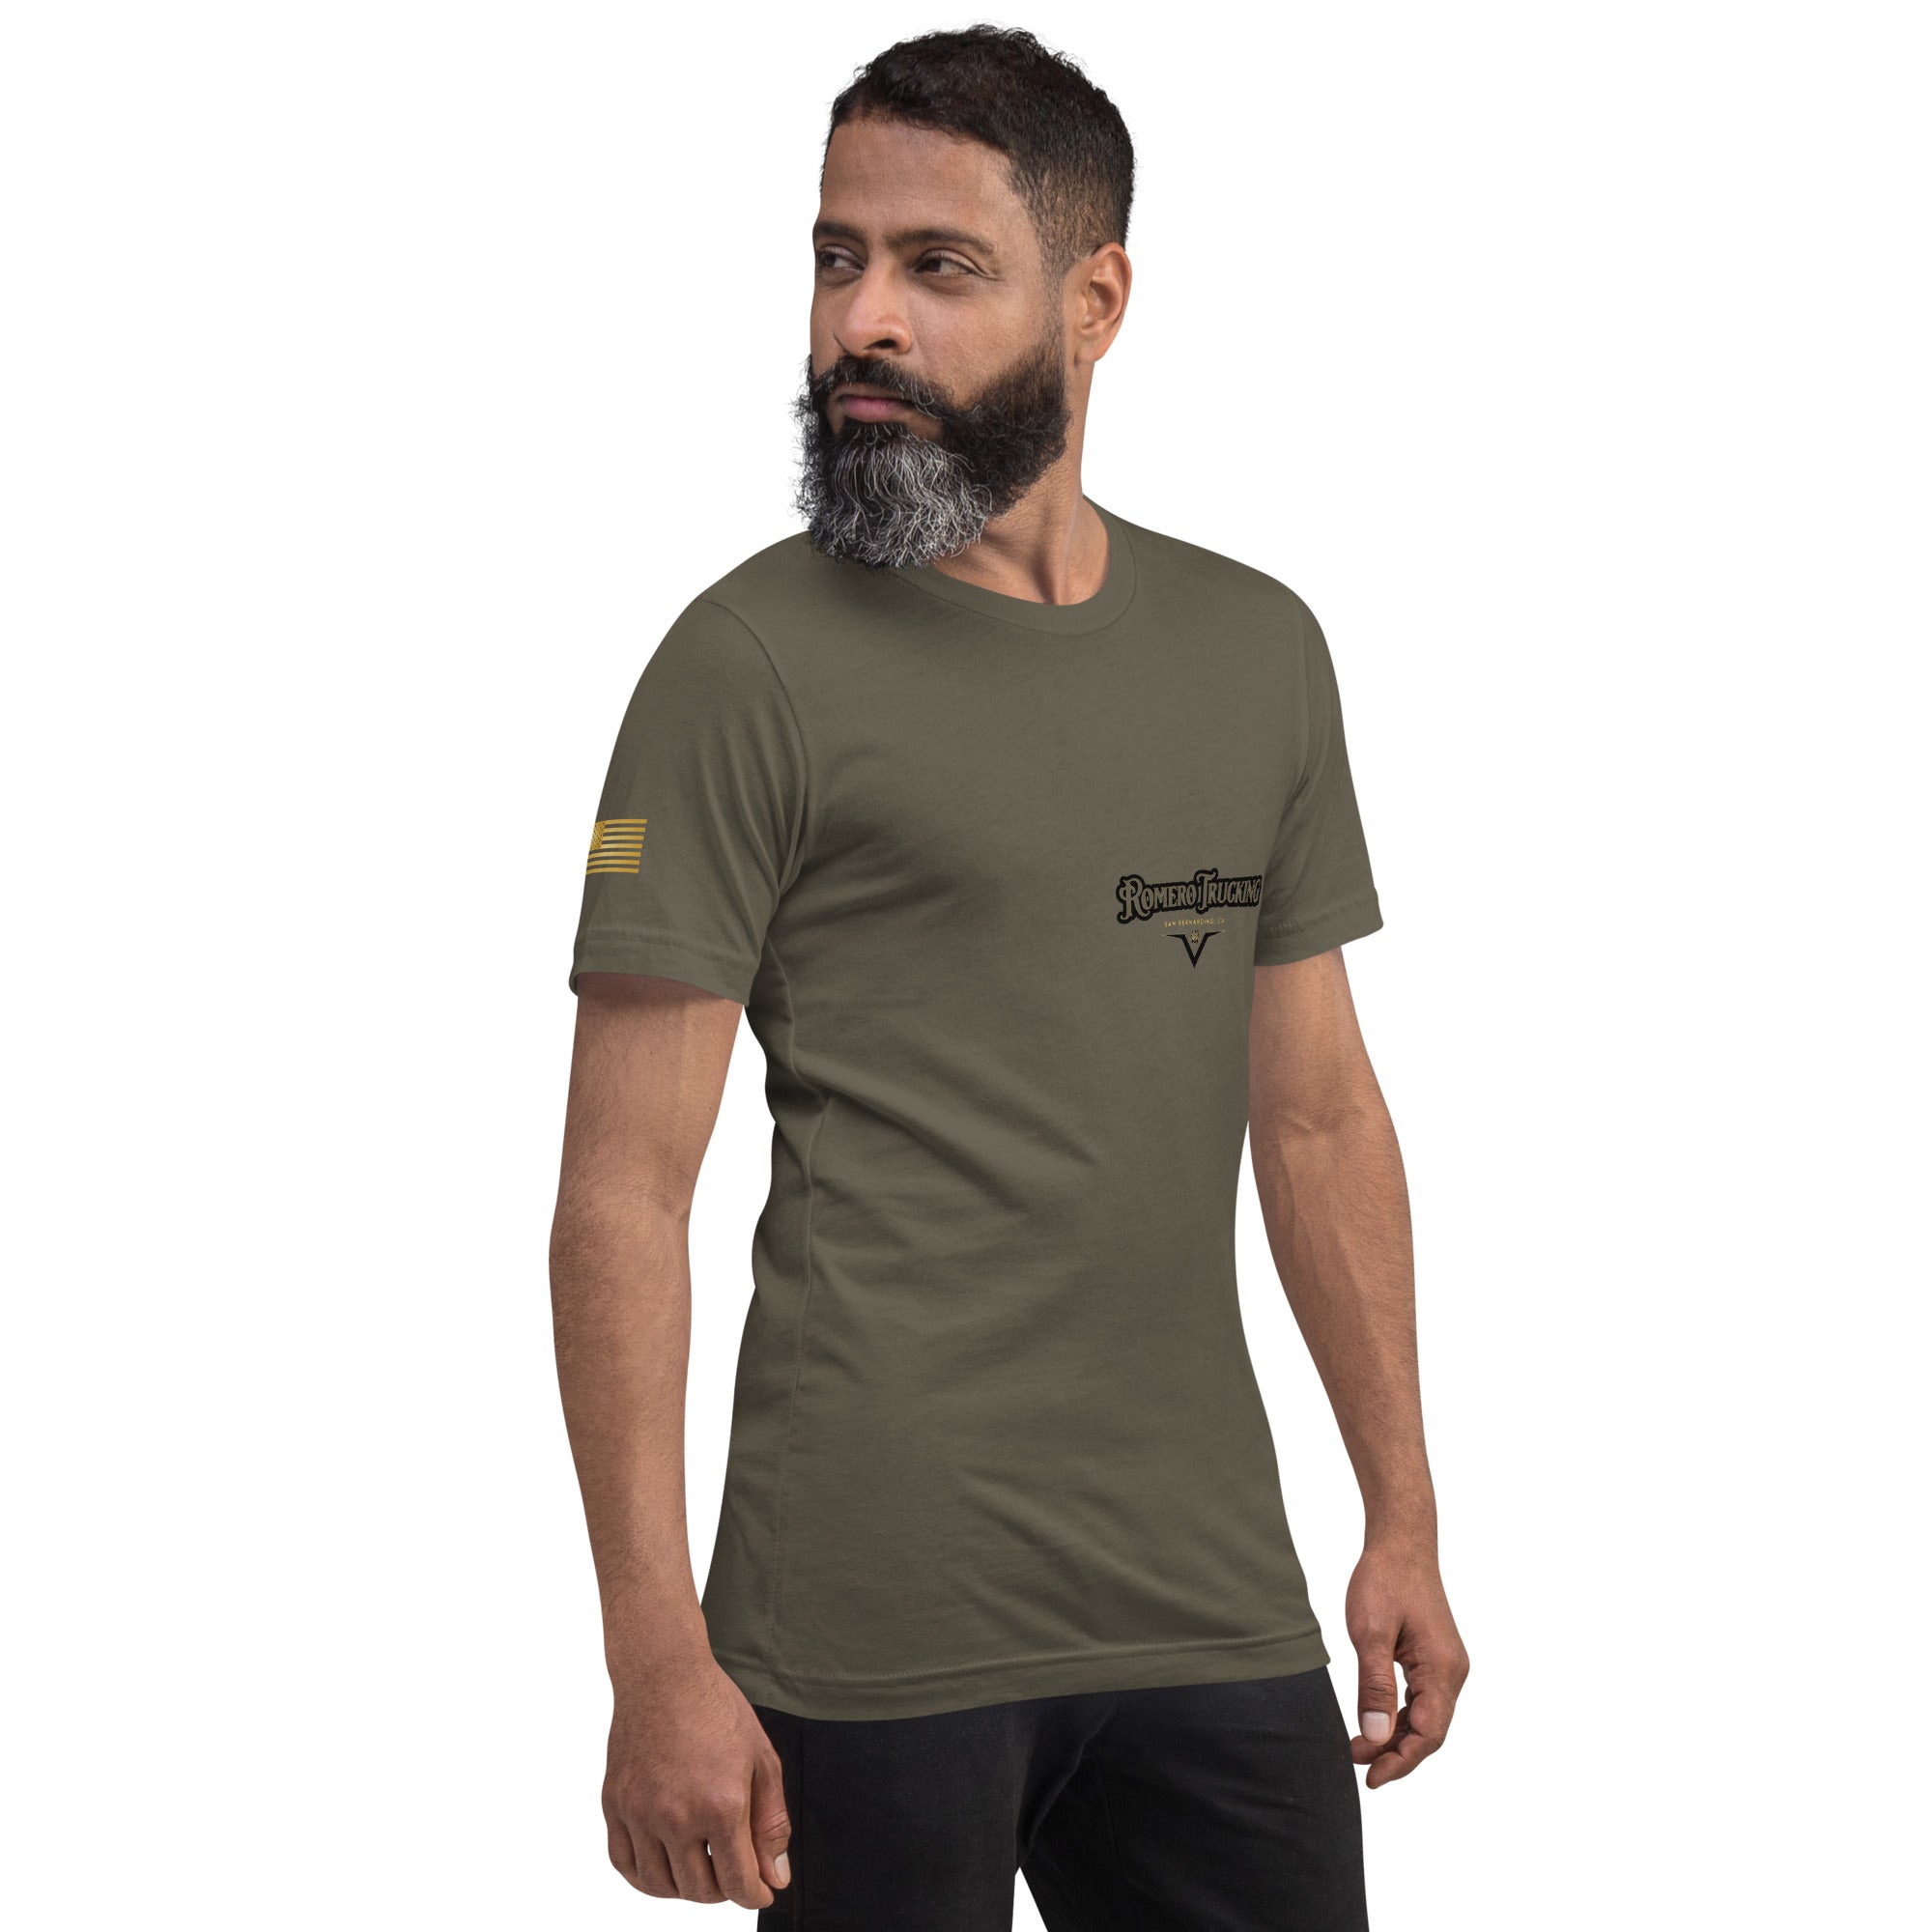 Romero Trucking | Unisex t-shirt | Custom